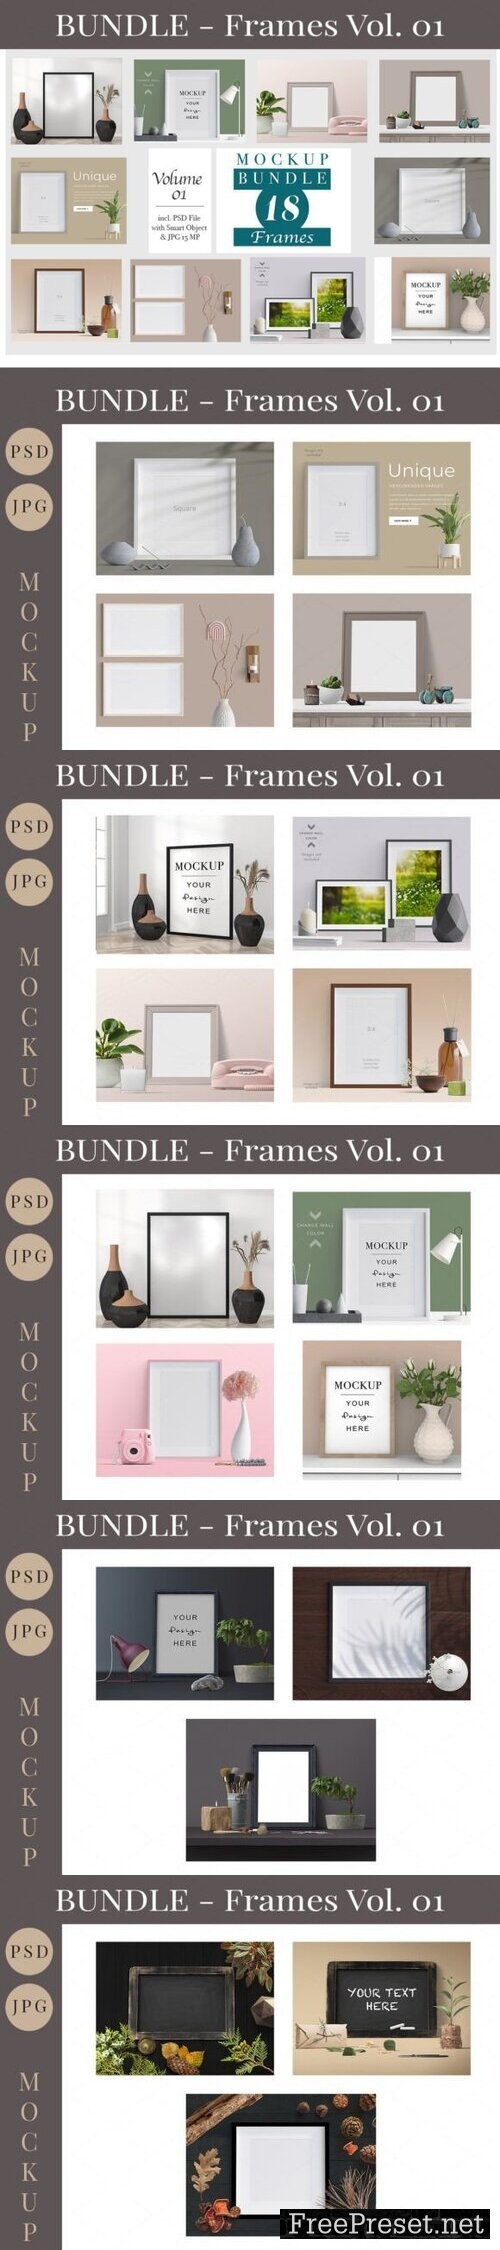 Picture Frames Mockup Bundle Vol. 01